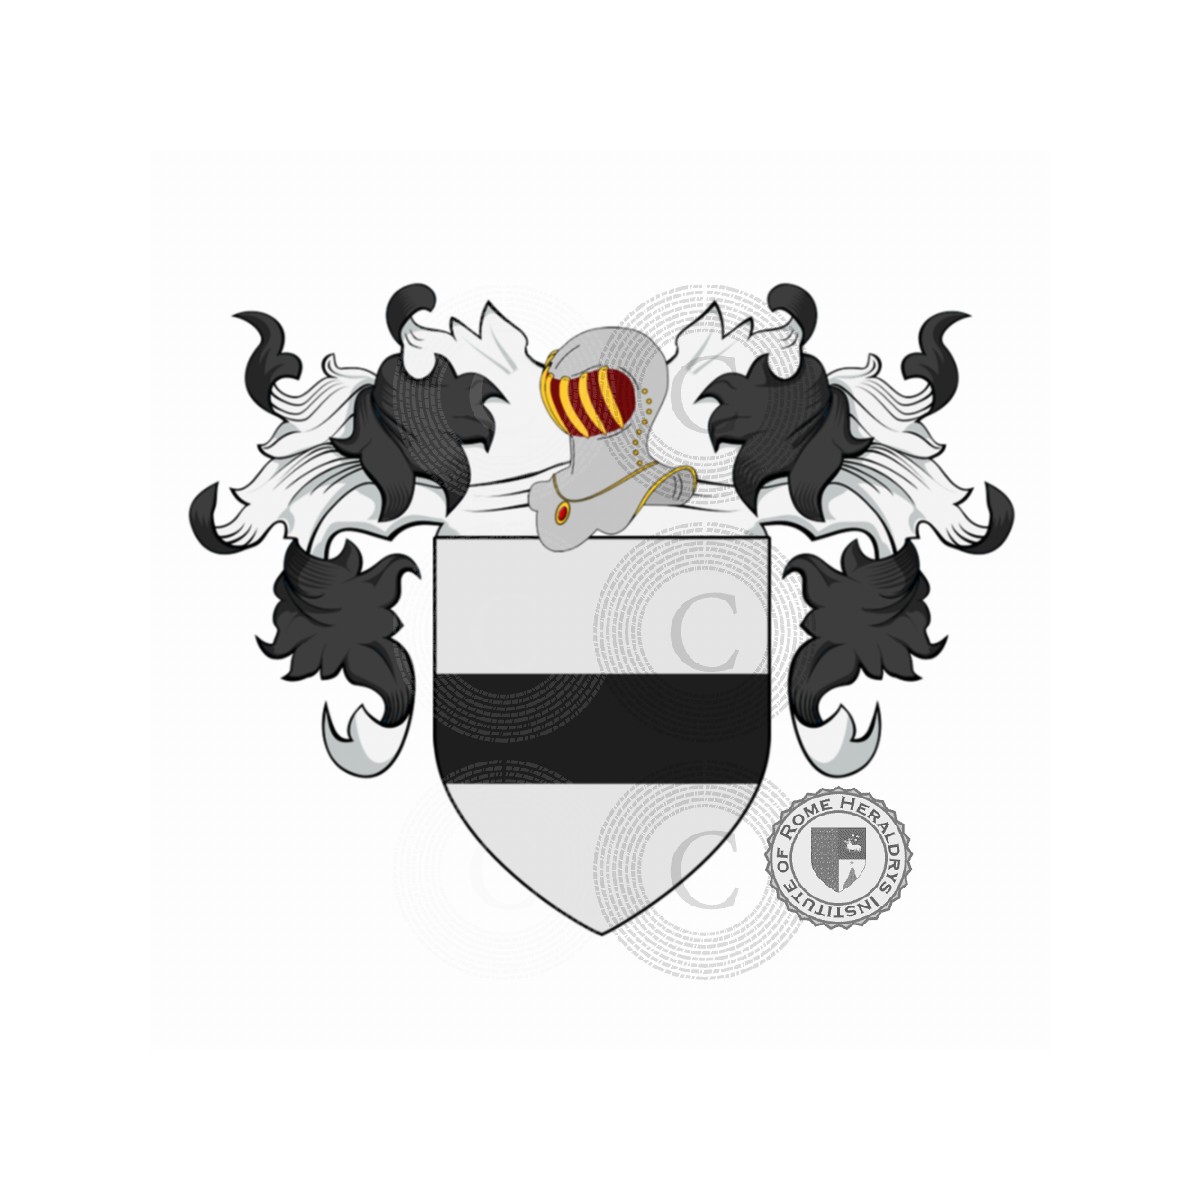 Wappen der FamilieCapocci, Capoccia, Capocci